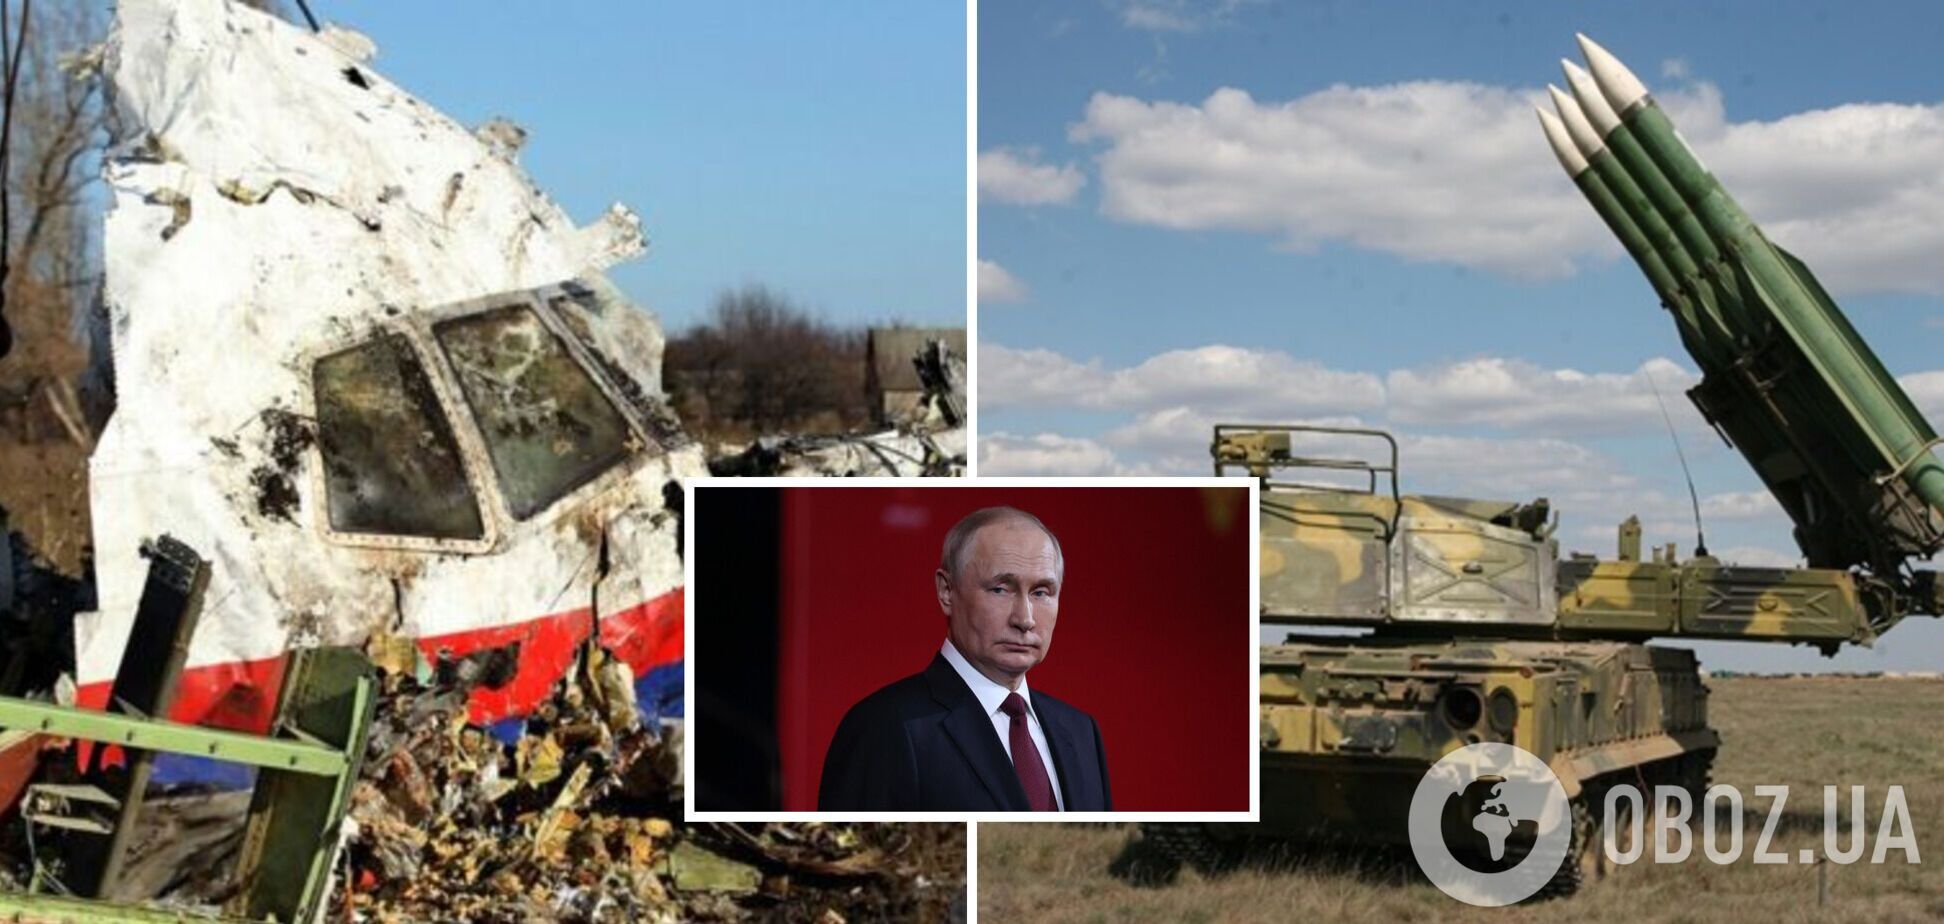 Путин лично одобрил поставку 'Бук-М1' в Украину: объявлены новые подробности расследования катастрофы МН17 и разговор с Плотницким